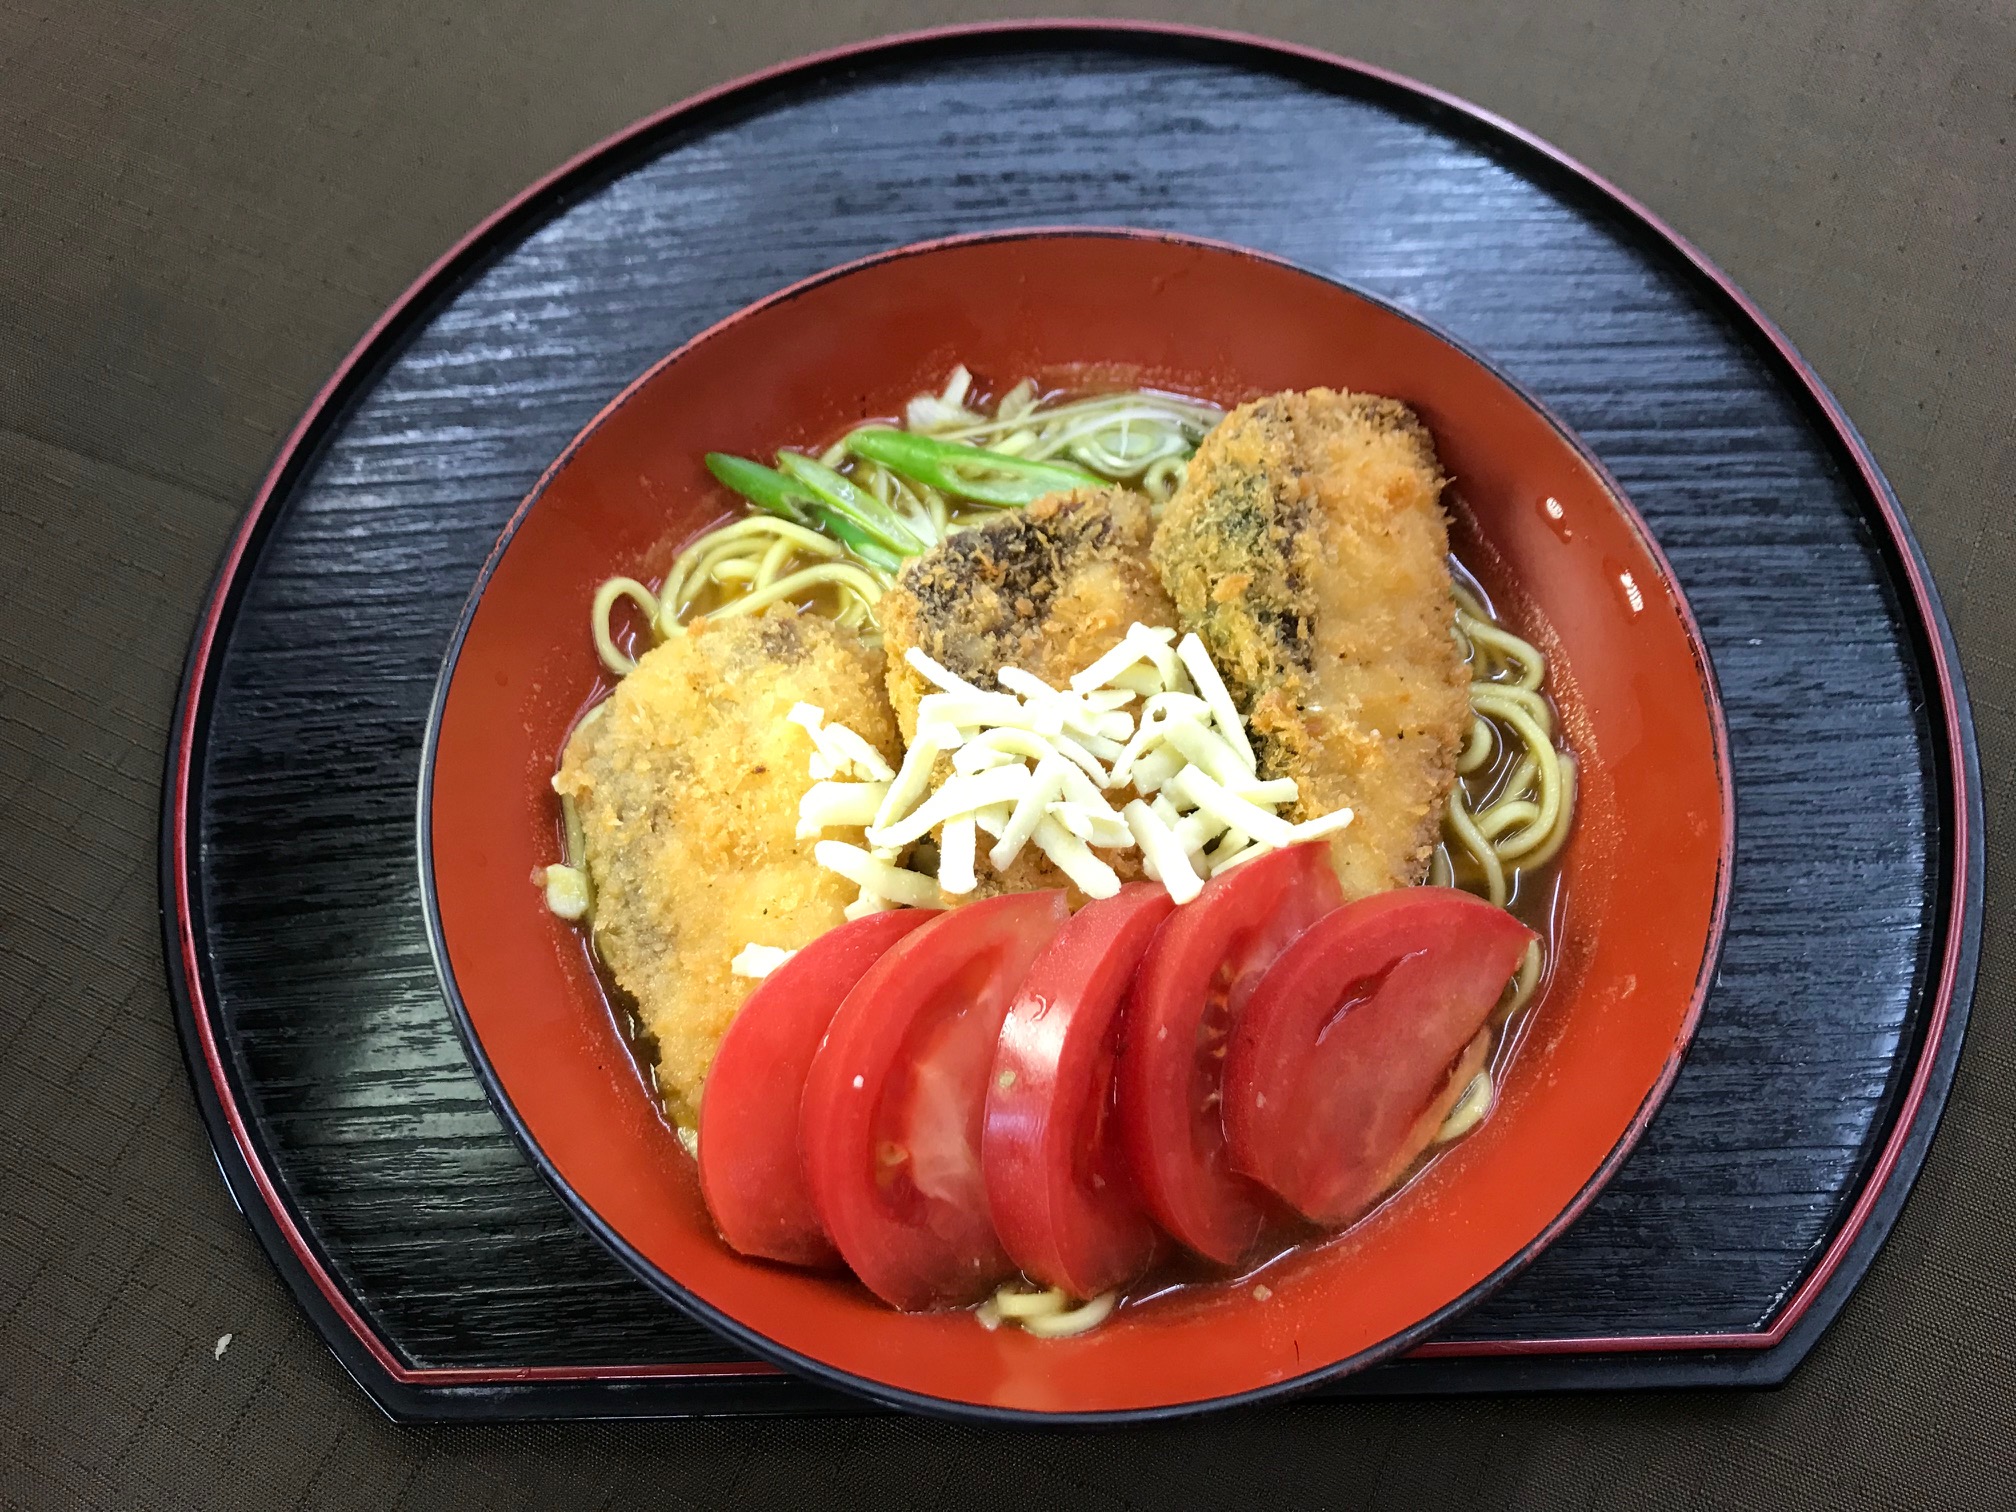 カレー中日カンパチフライ乗せ 海の恵み 食の底力 Japan 公式レシピサイト